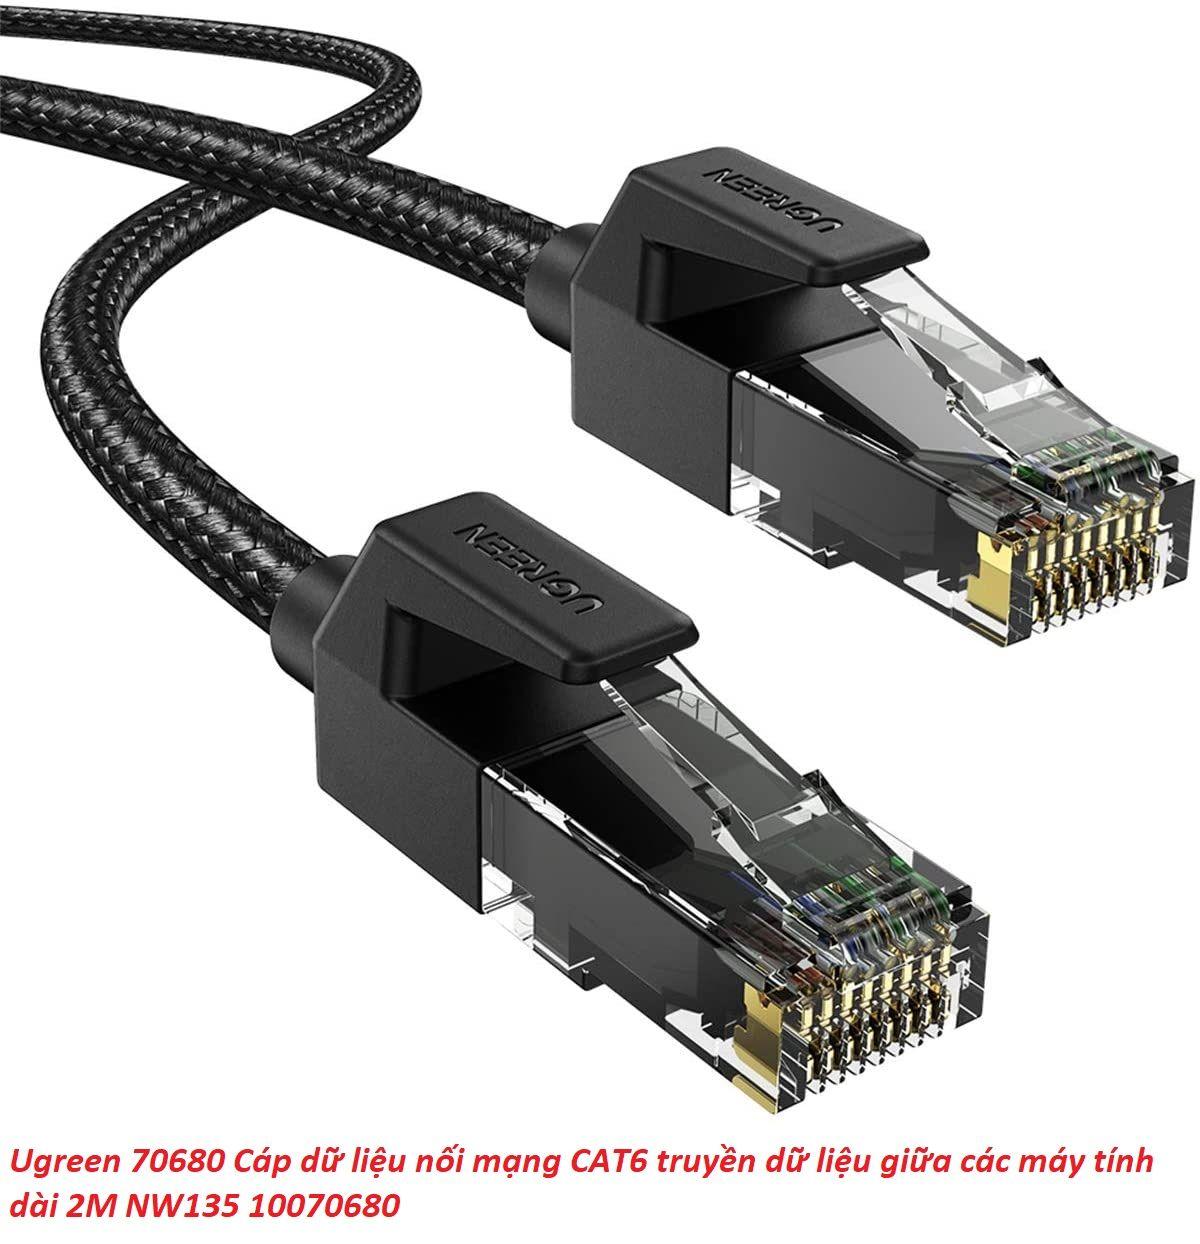 Hình ảnh Ugreen UG70680NW135TK 2M Cat6E FTP Cáp nối mạng truyền dữ liệu giữa các máy tính - HÀNG CHÍNH HÃNG